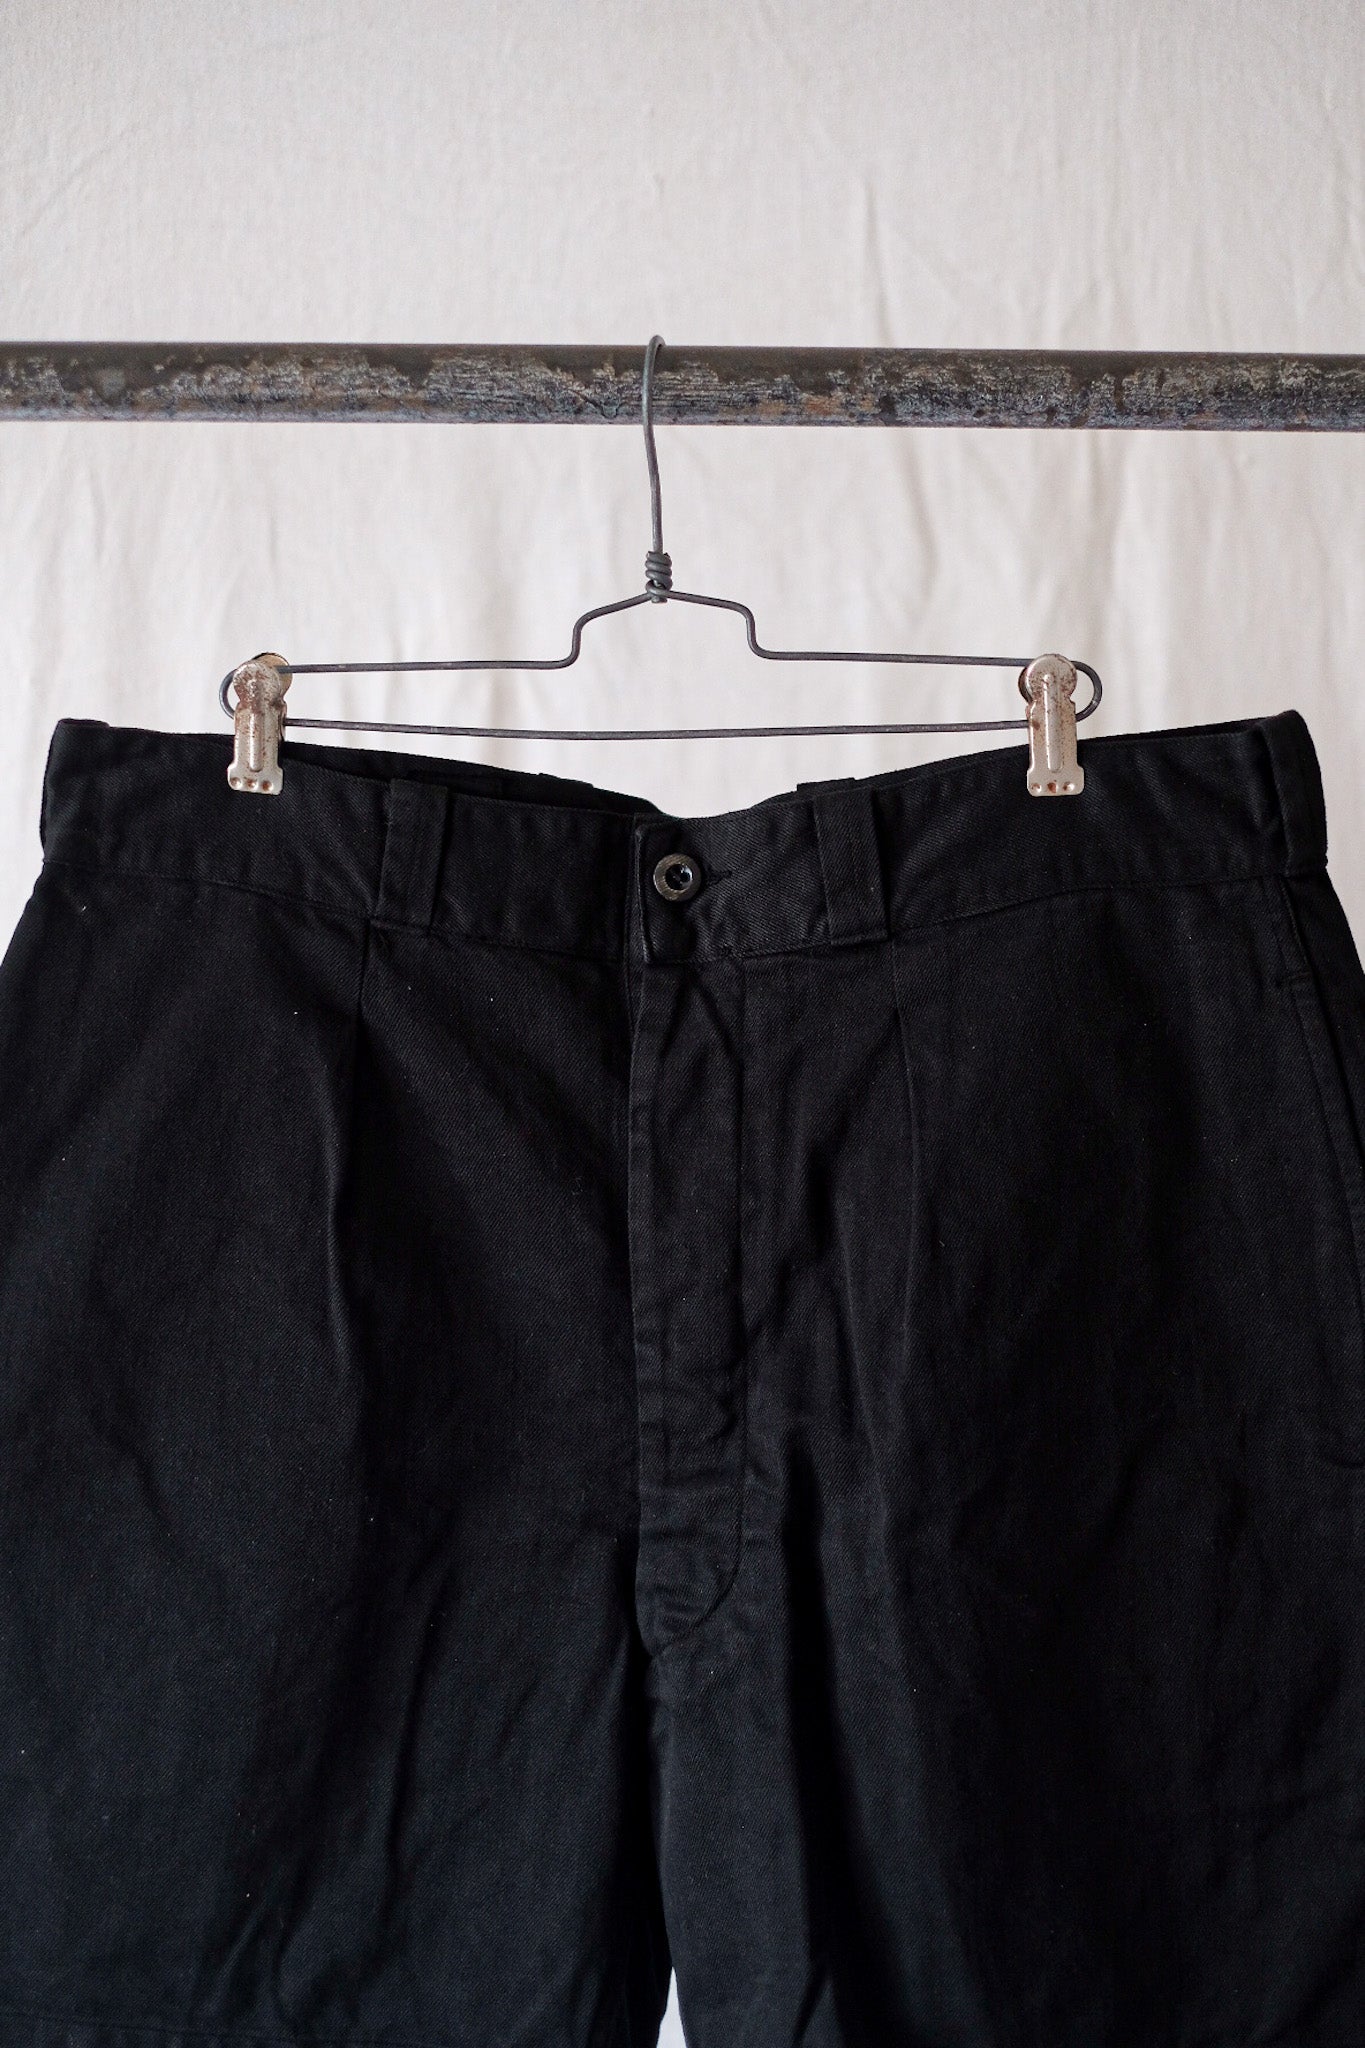 [〜60年代]法國陸軍M52 Chino短褲尺寸。5“黑色Overdye”